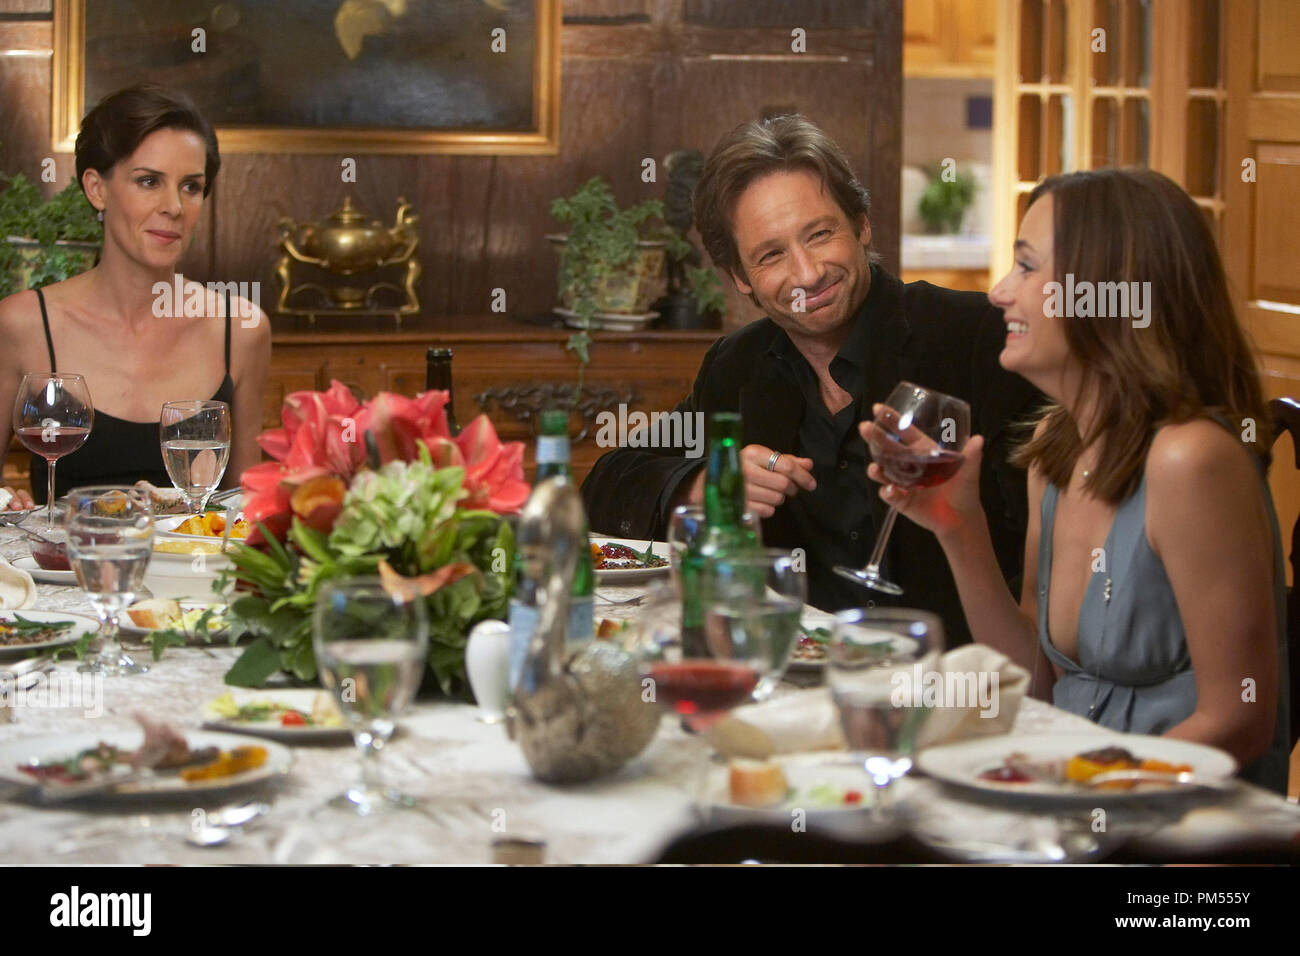 Embeth Davidtz as Felicia Koons, David Duchovny as Hank, and Diane Farr as Jill Robinson in Californication (Season 3, Episode 1) Stock Photo